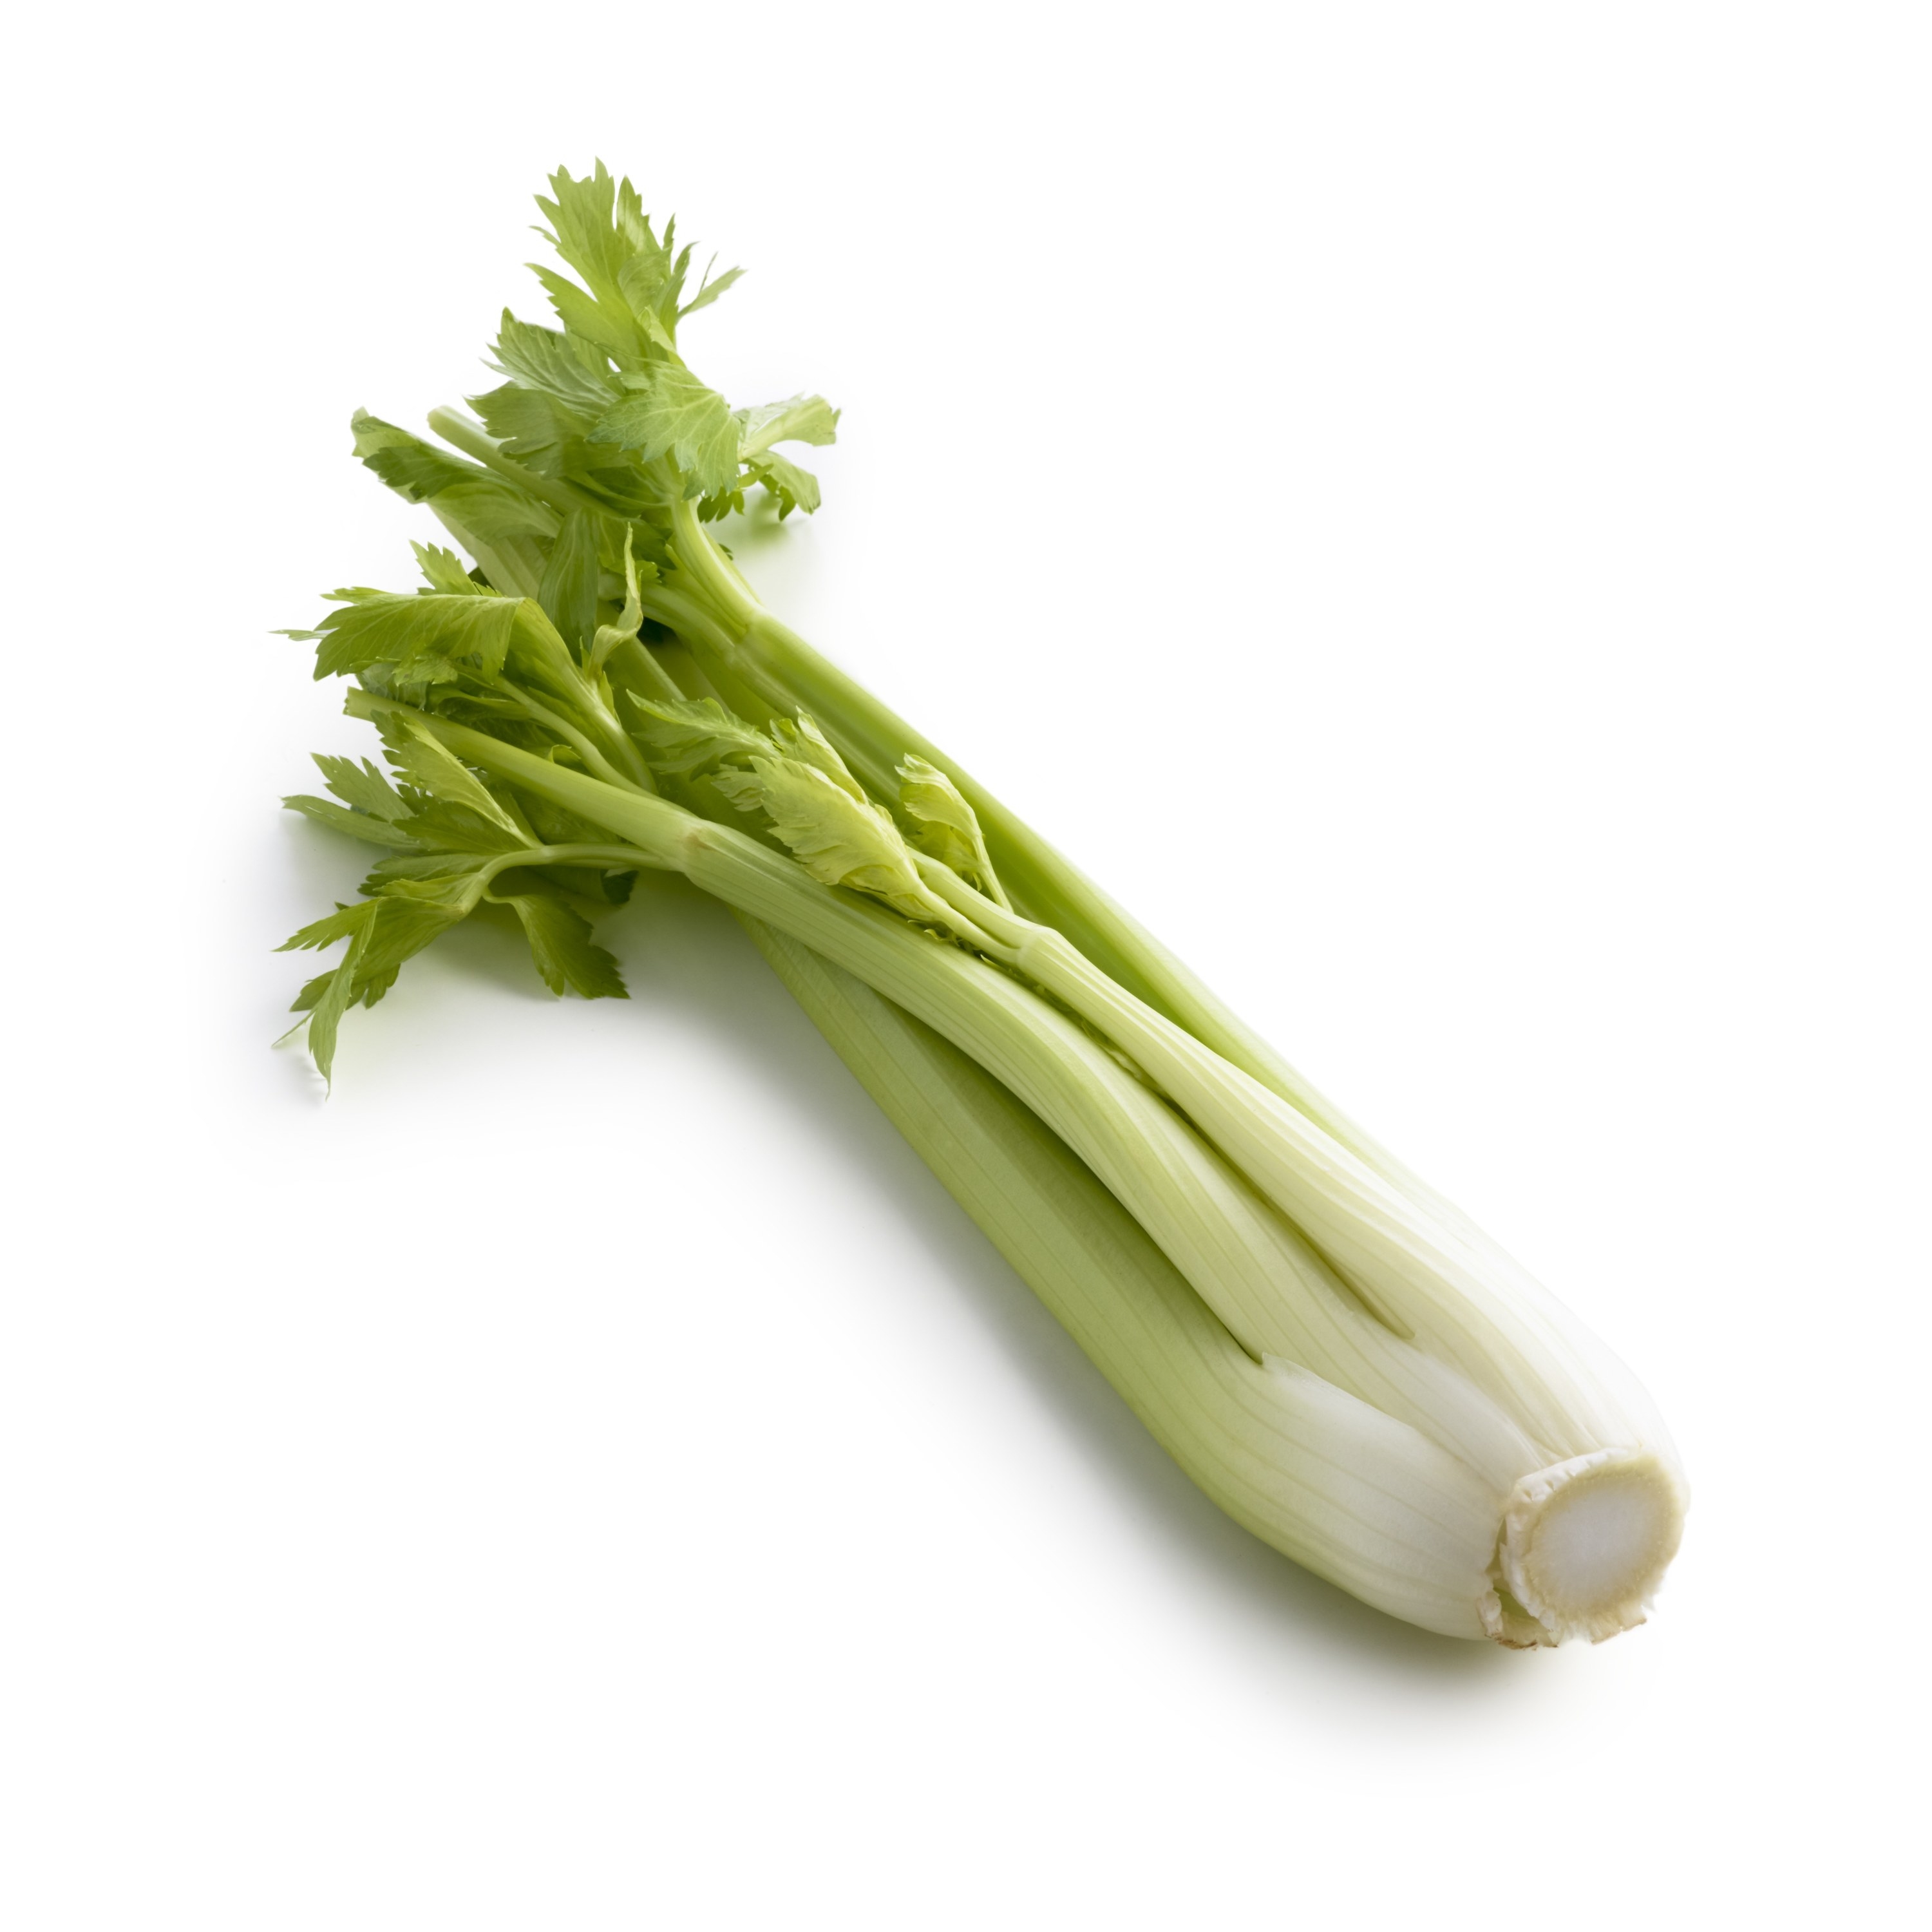 stalk of celery